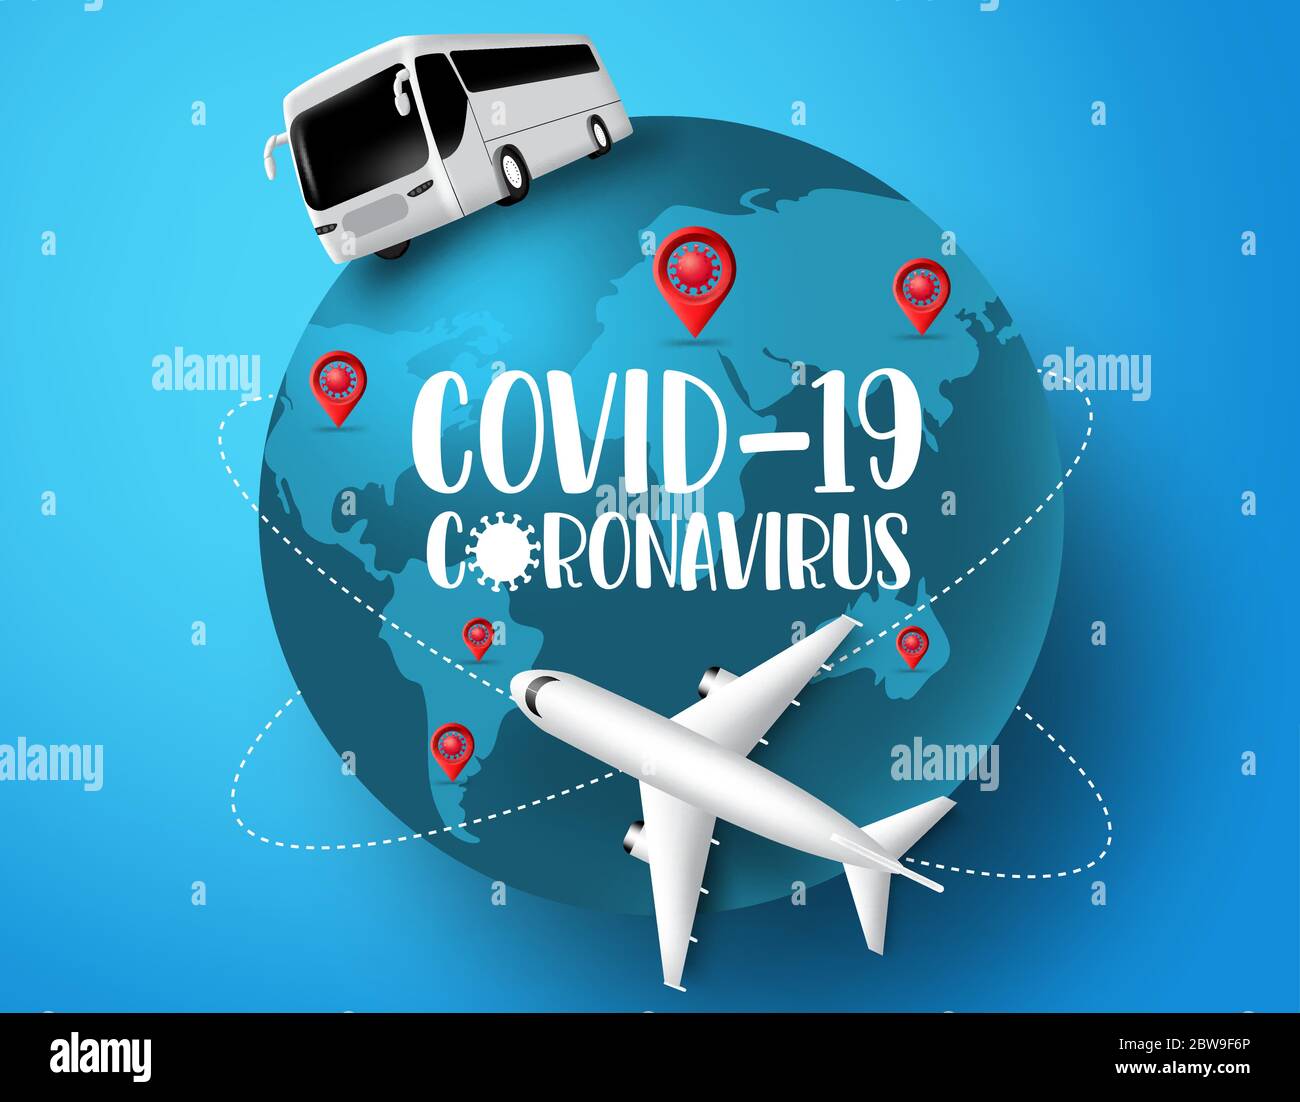 Coronavirus globales Reisevektorkonzept. Coronavirus covid-19 in der Welt Pandemie Ausbruch mit Flugzeug, Pass und Ticket-Elemente. Stock Vektor